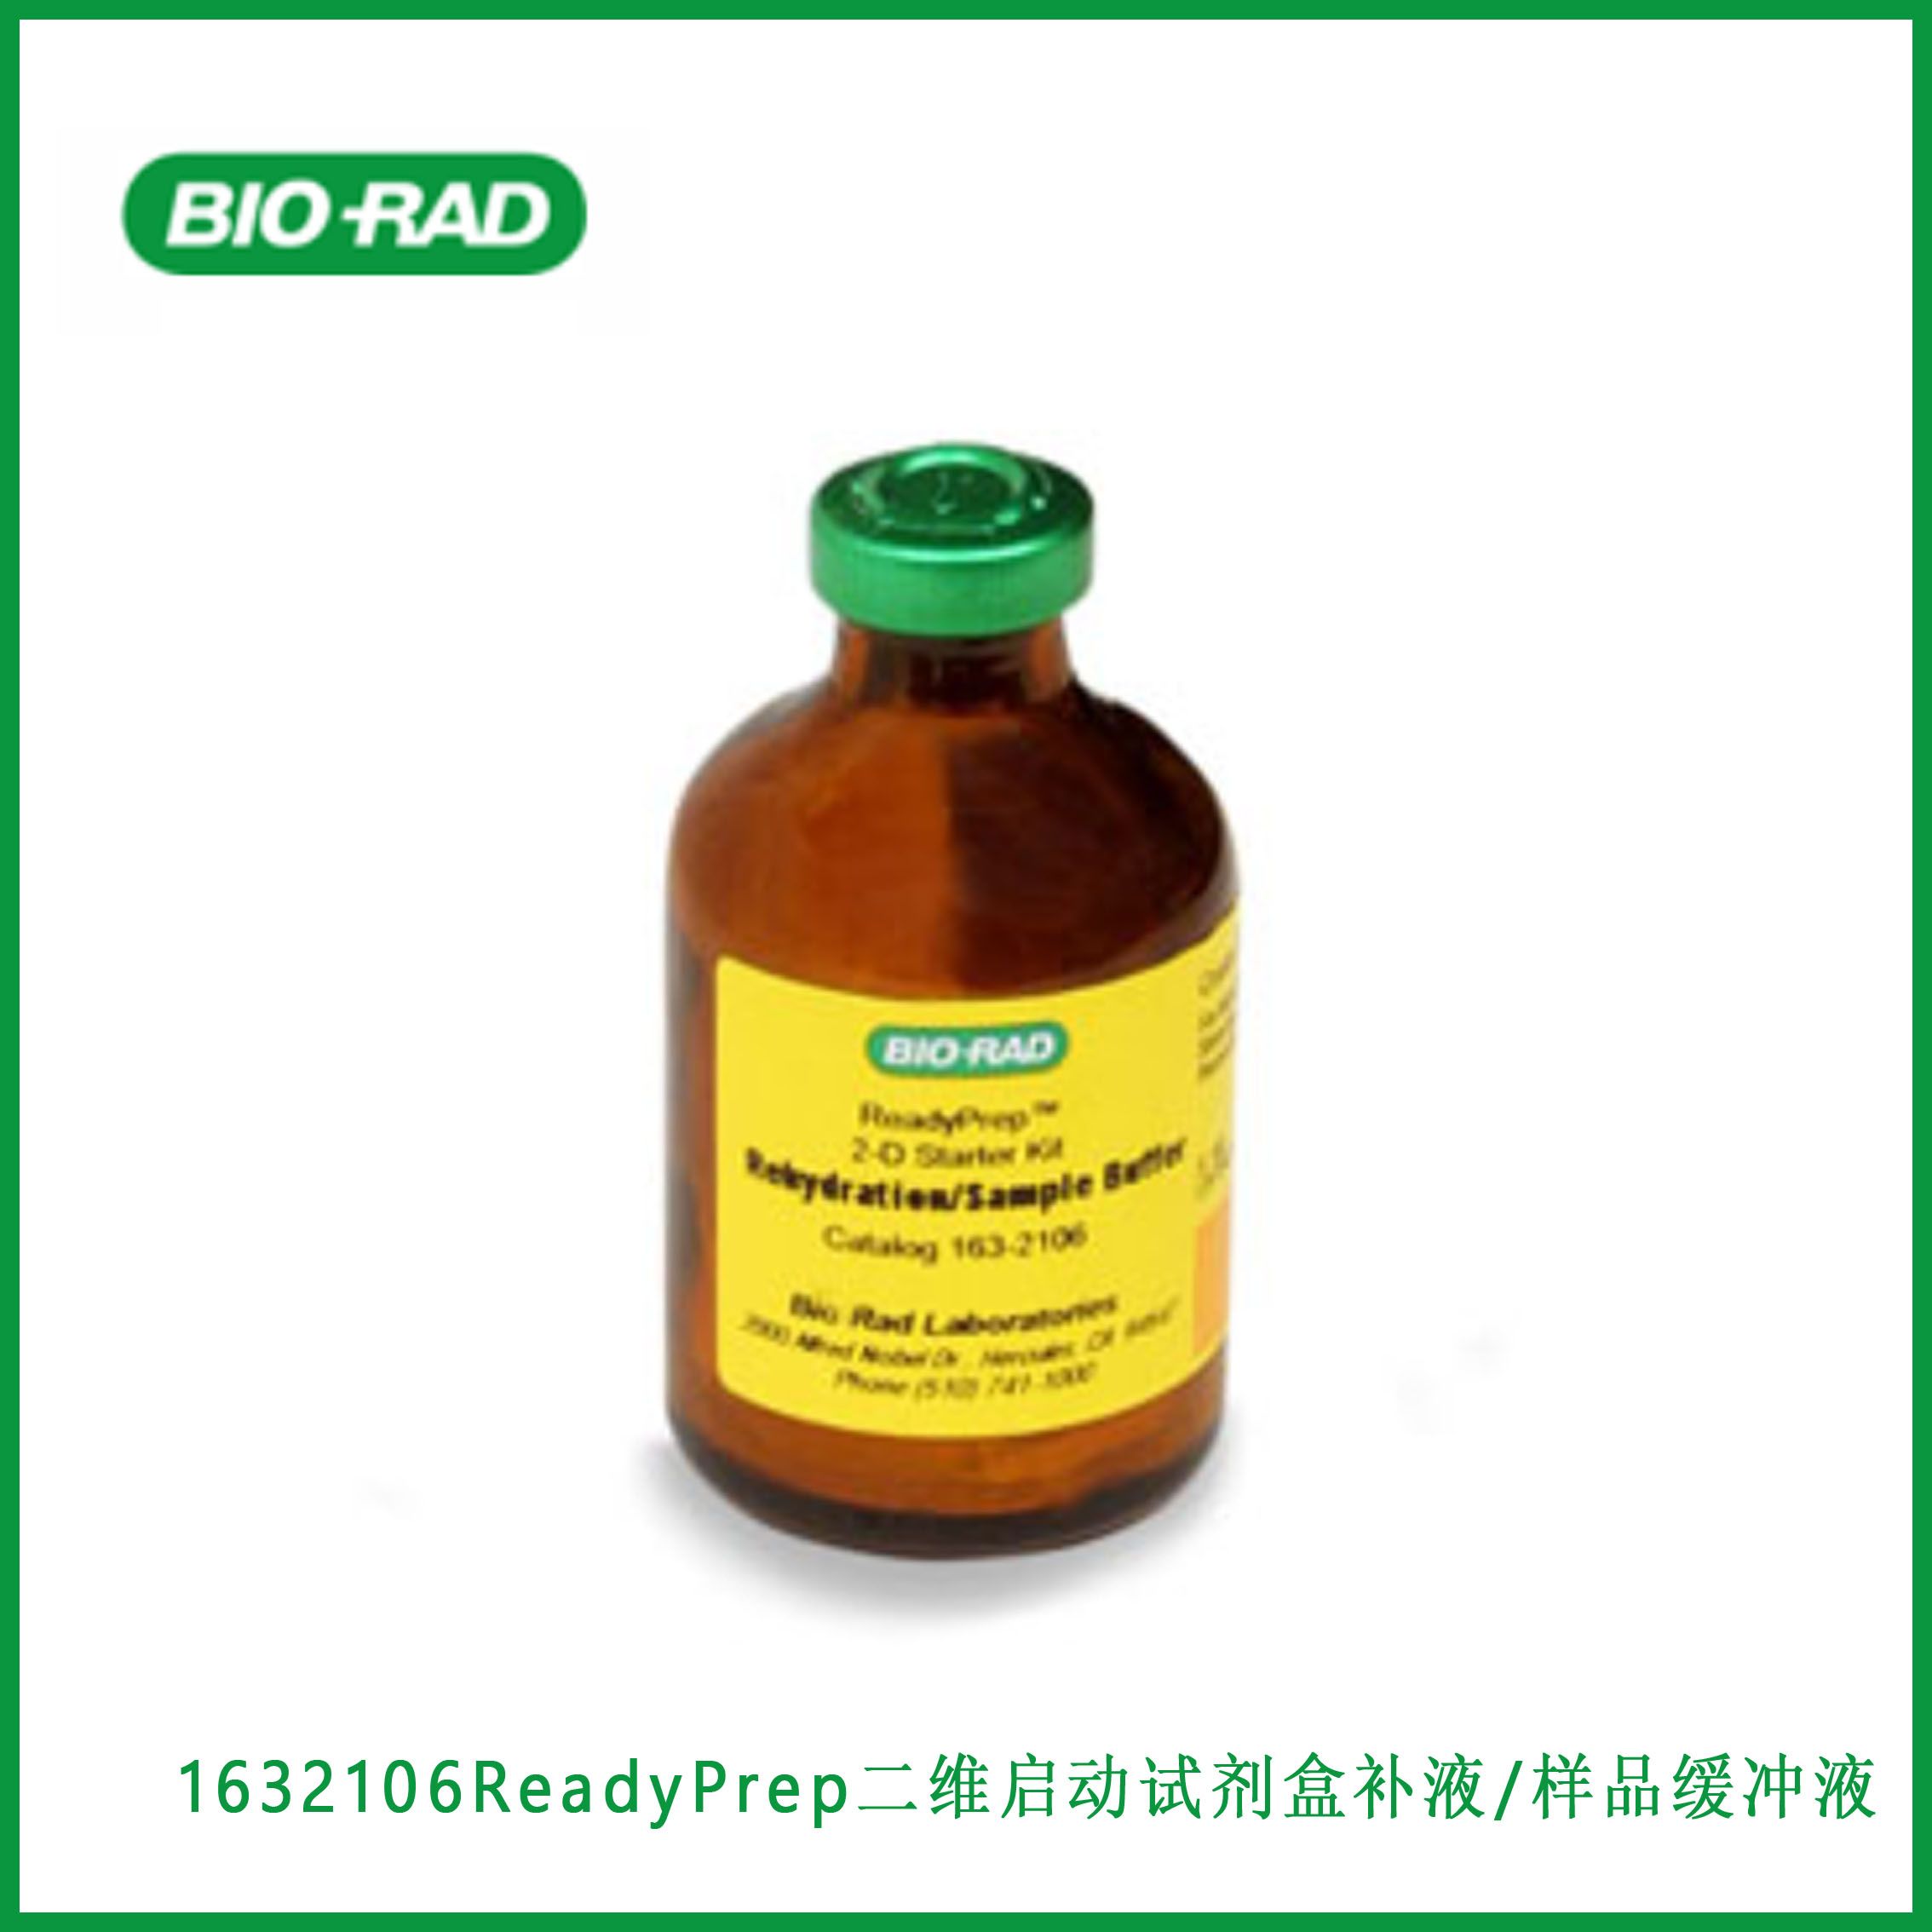 伯乐Bio-Rad1632106ReadyPrep™ 2-D Starter Kit Rehydration/Sample Buffer, ReadyPrep™  二维启动试剂盒补液/样品缓冲液,现货